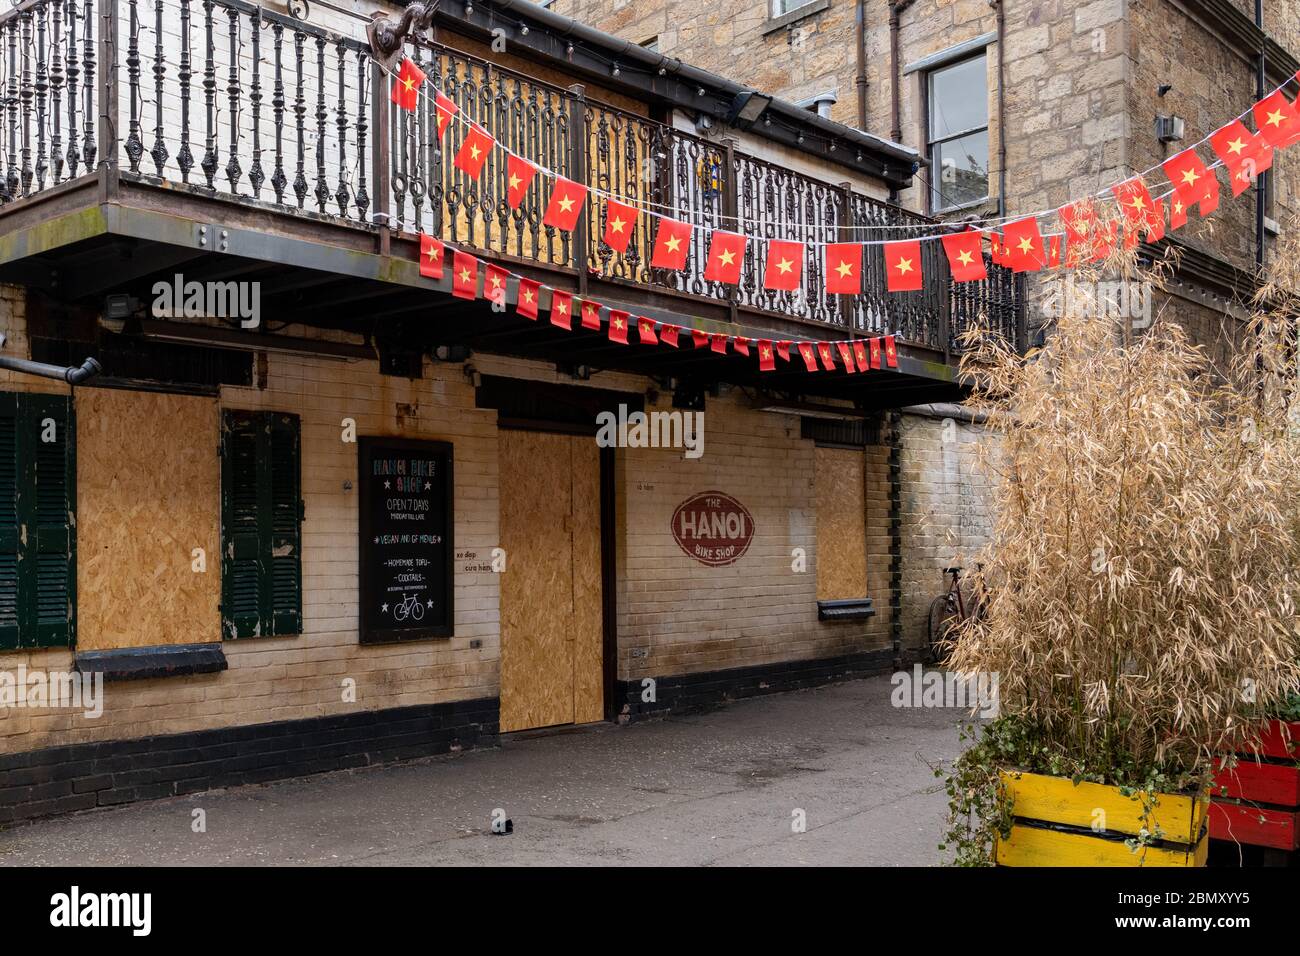 Le restaurant vietnamien « Hanoi Bike Shop » est fermé et a embarqué pendant le confinement en cas de pandémie du coronavirus, Ruthven Lane, Glasgow, Écosse, Royaume-Uni Banque D'Images